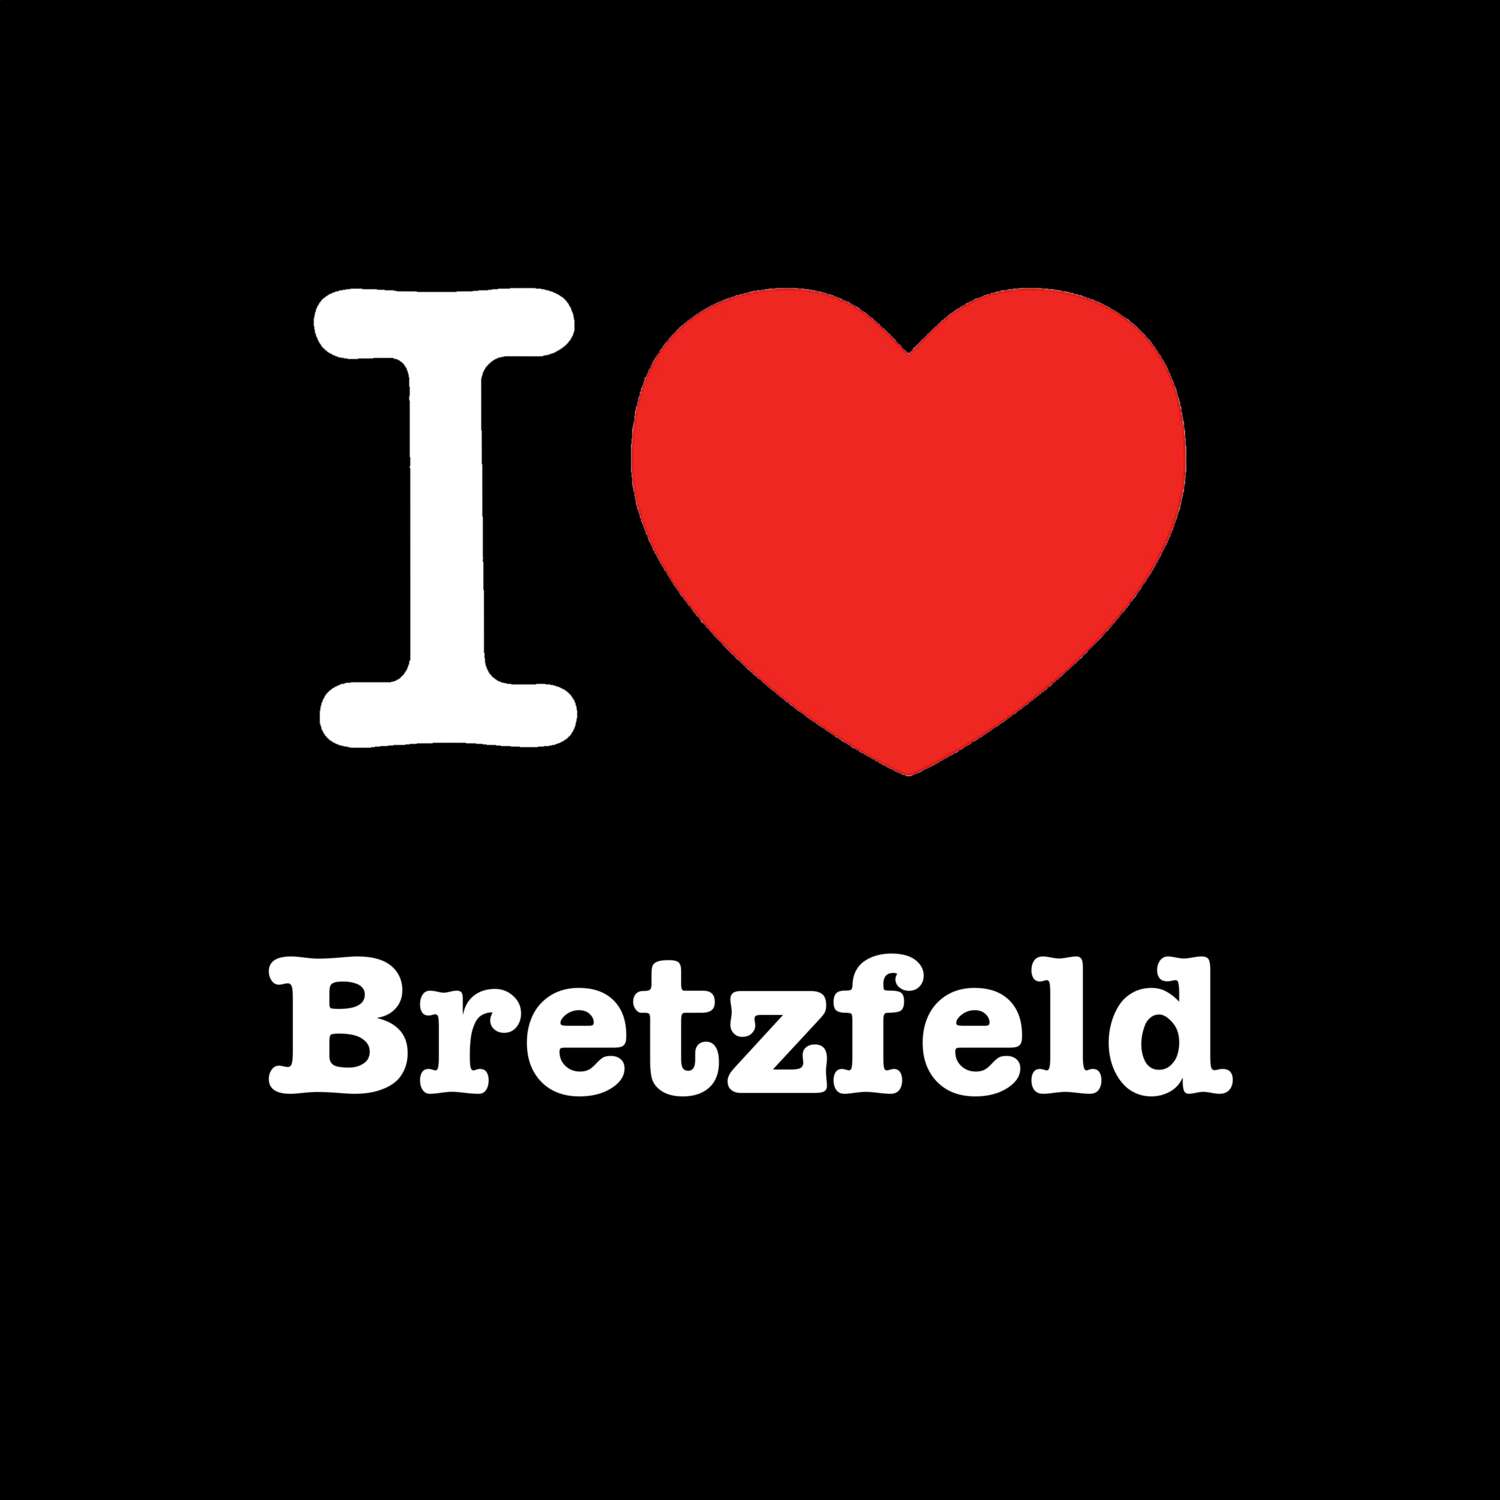 Bretzfeld T-Shirt »I love«